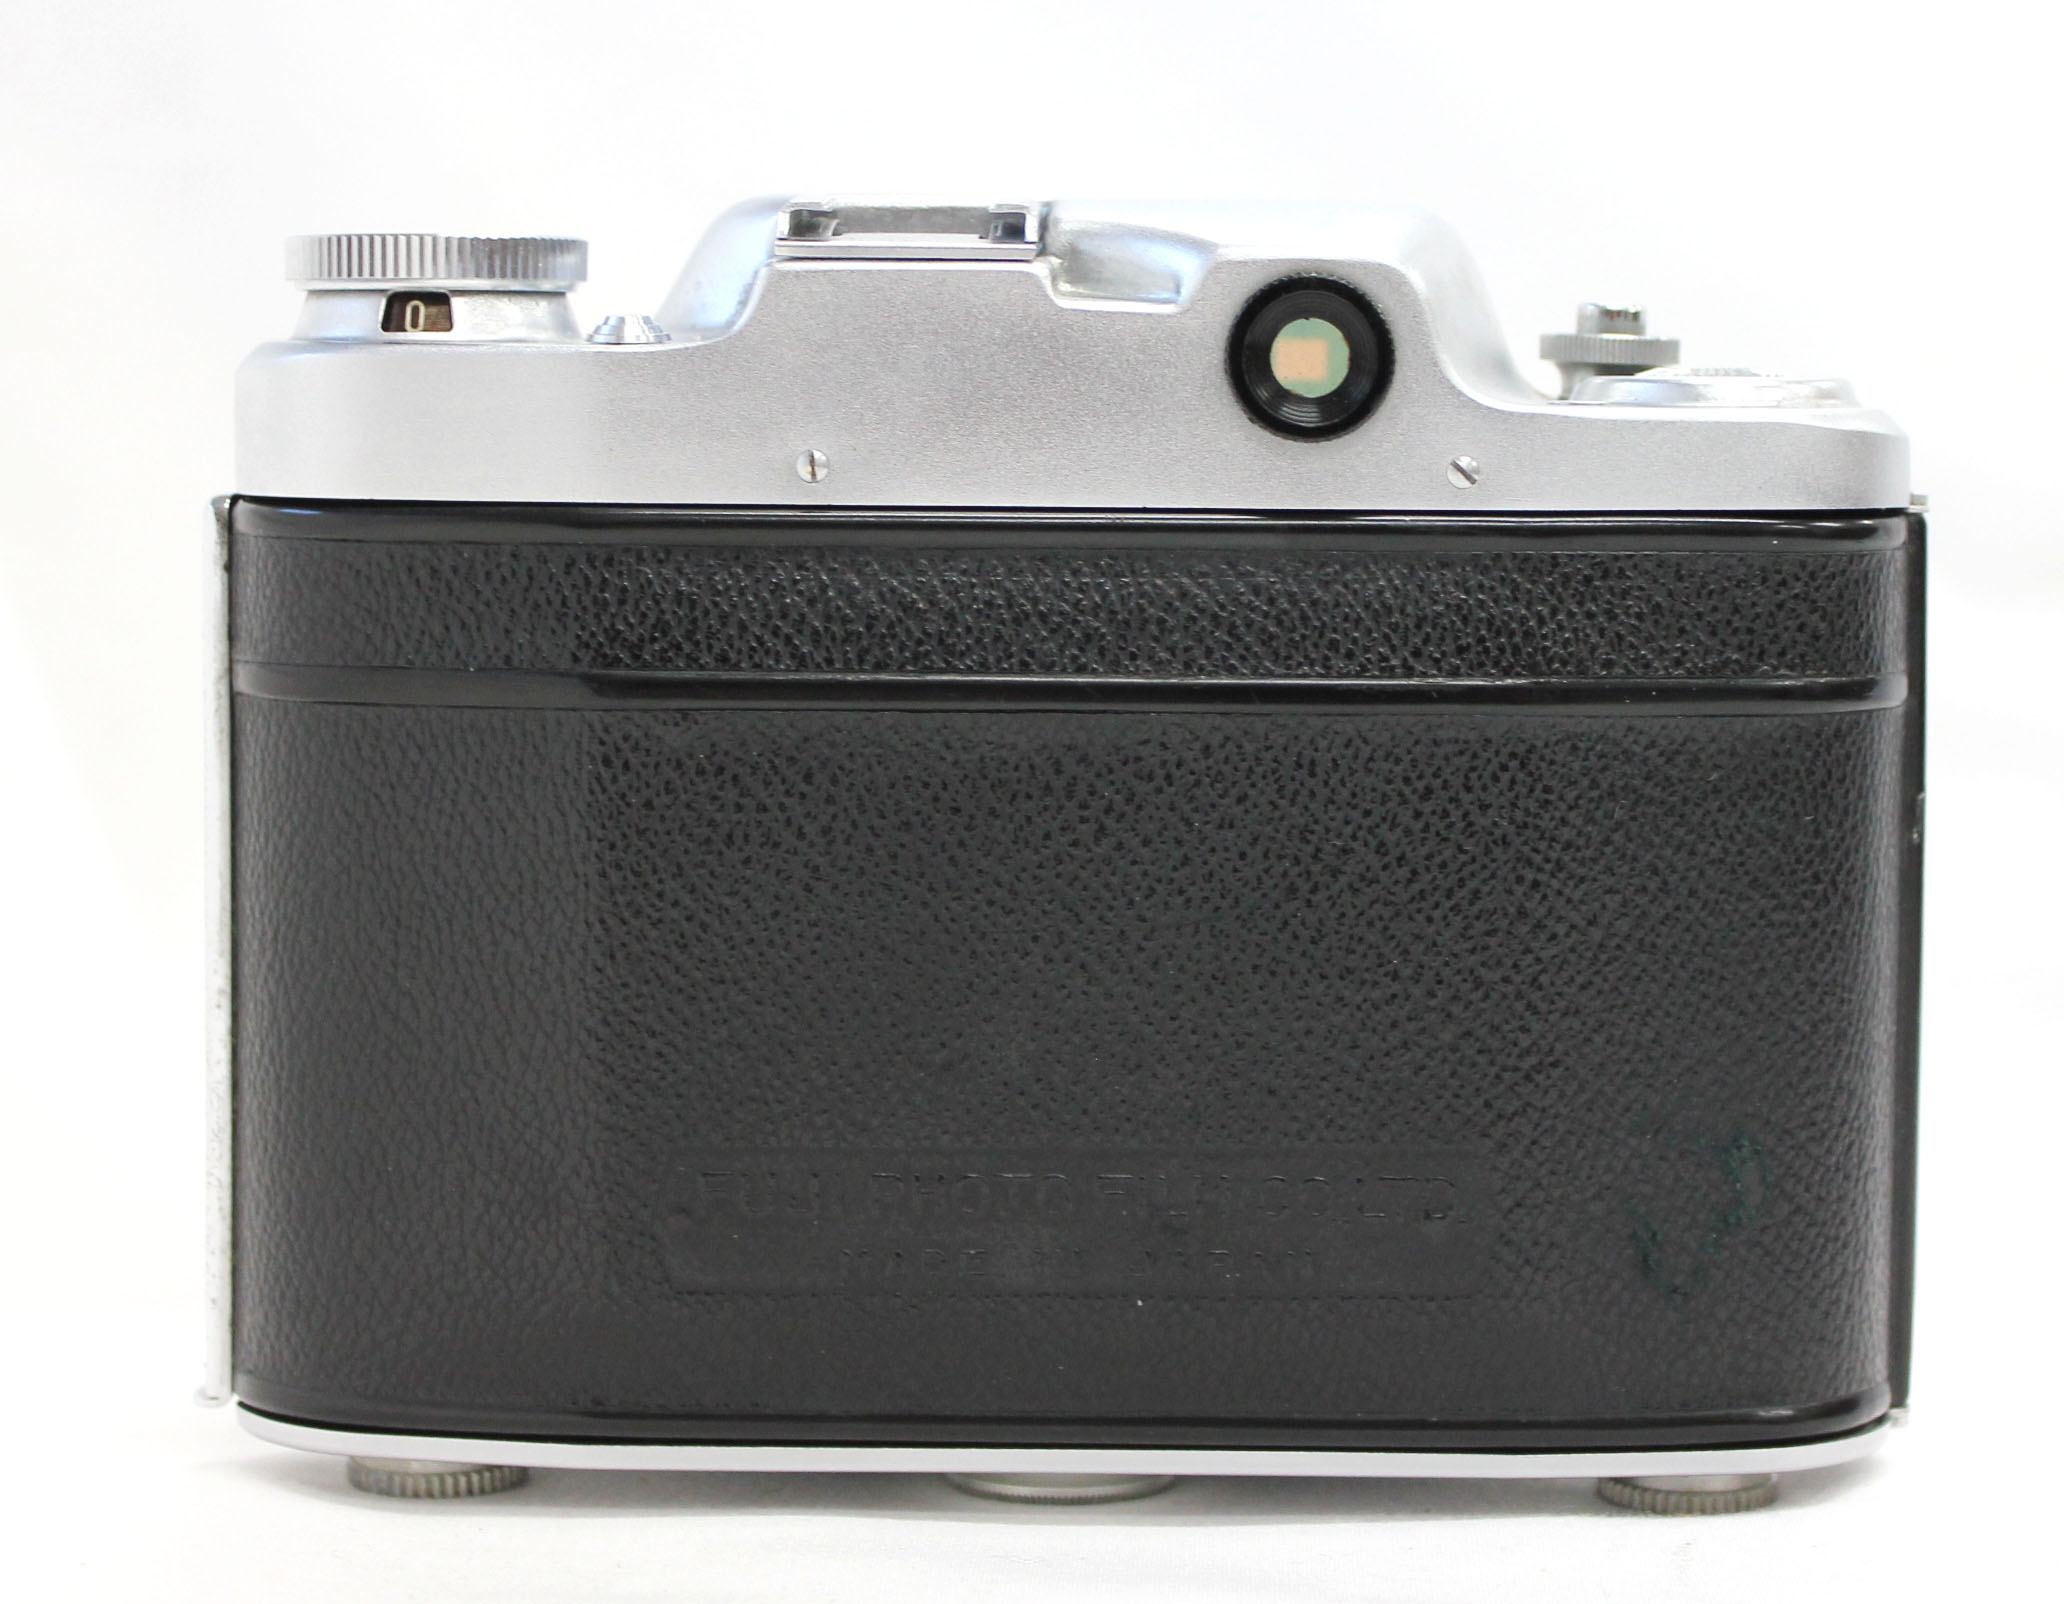 Fuji Super Fujica-6 Six 6x6 Medium Format Film Camera with Fujinar 75mm F/3.5 from Japan Photo 5